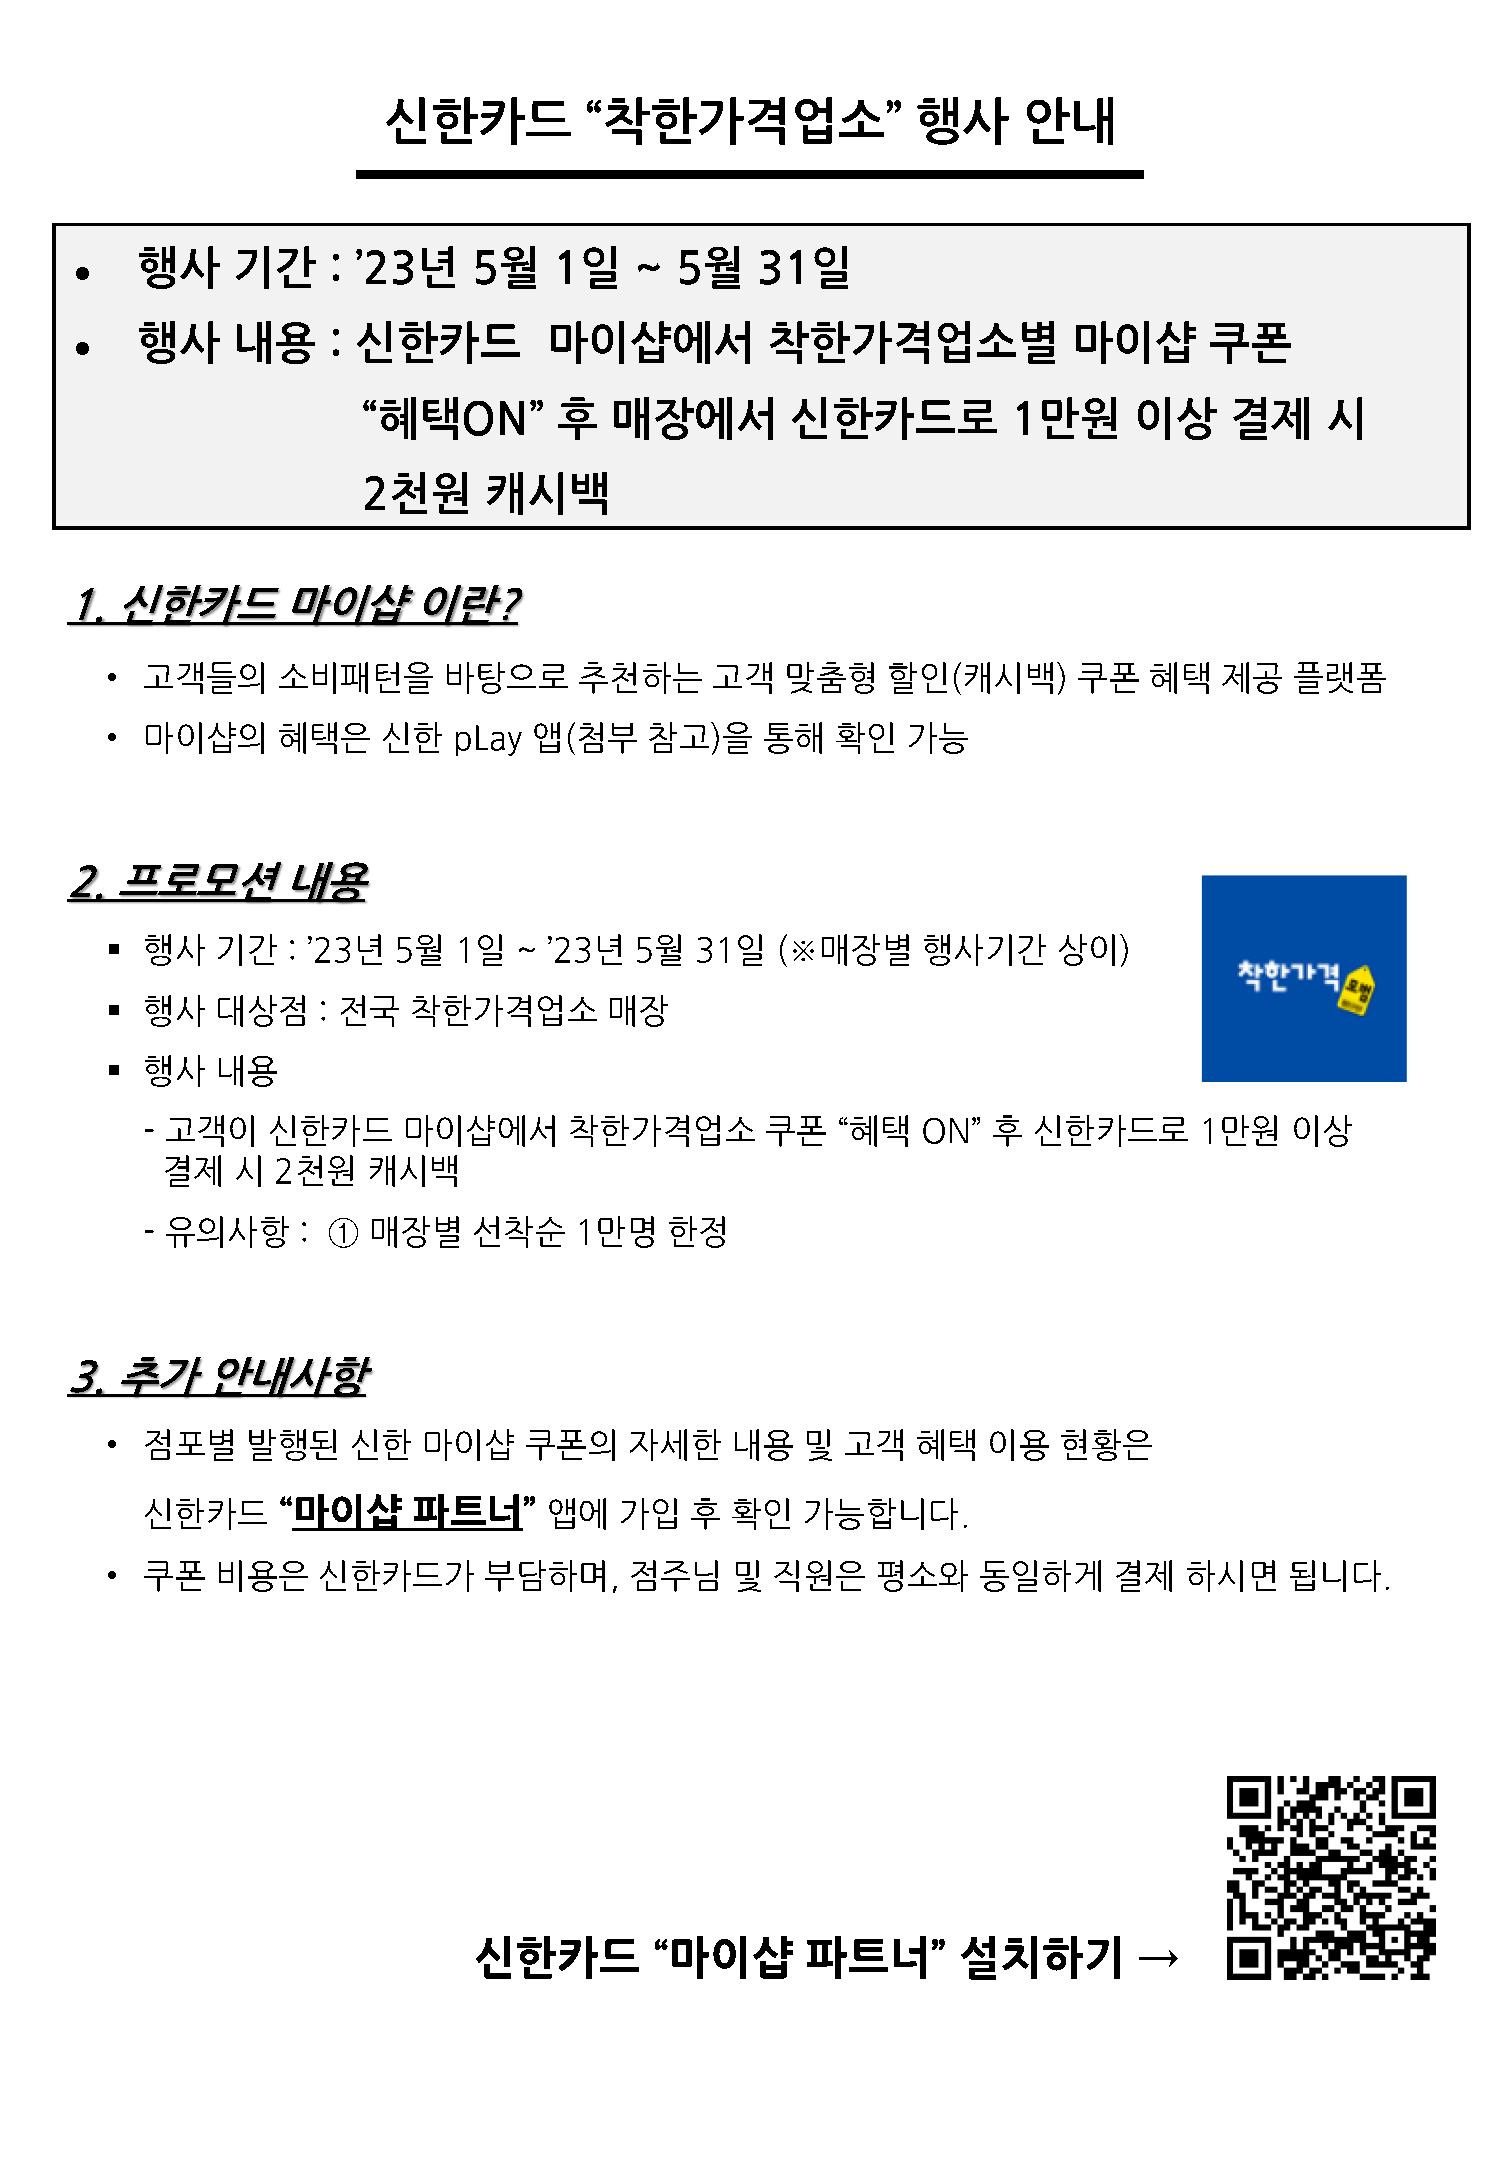 착한가격업소 관련 신한카드 행사 안내 첨부#1